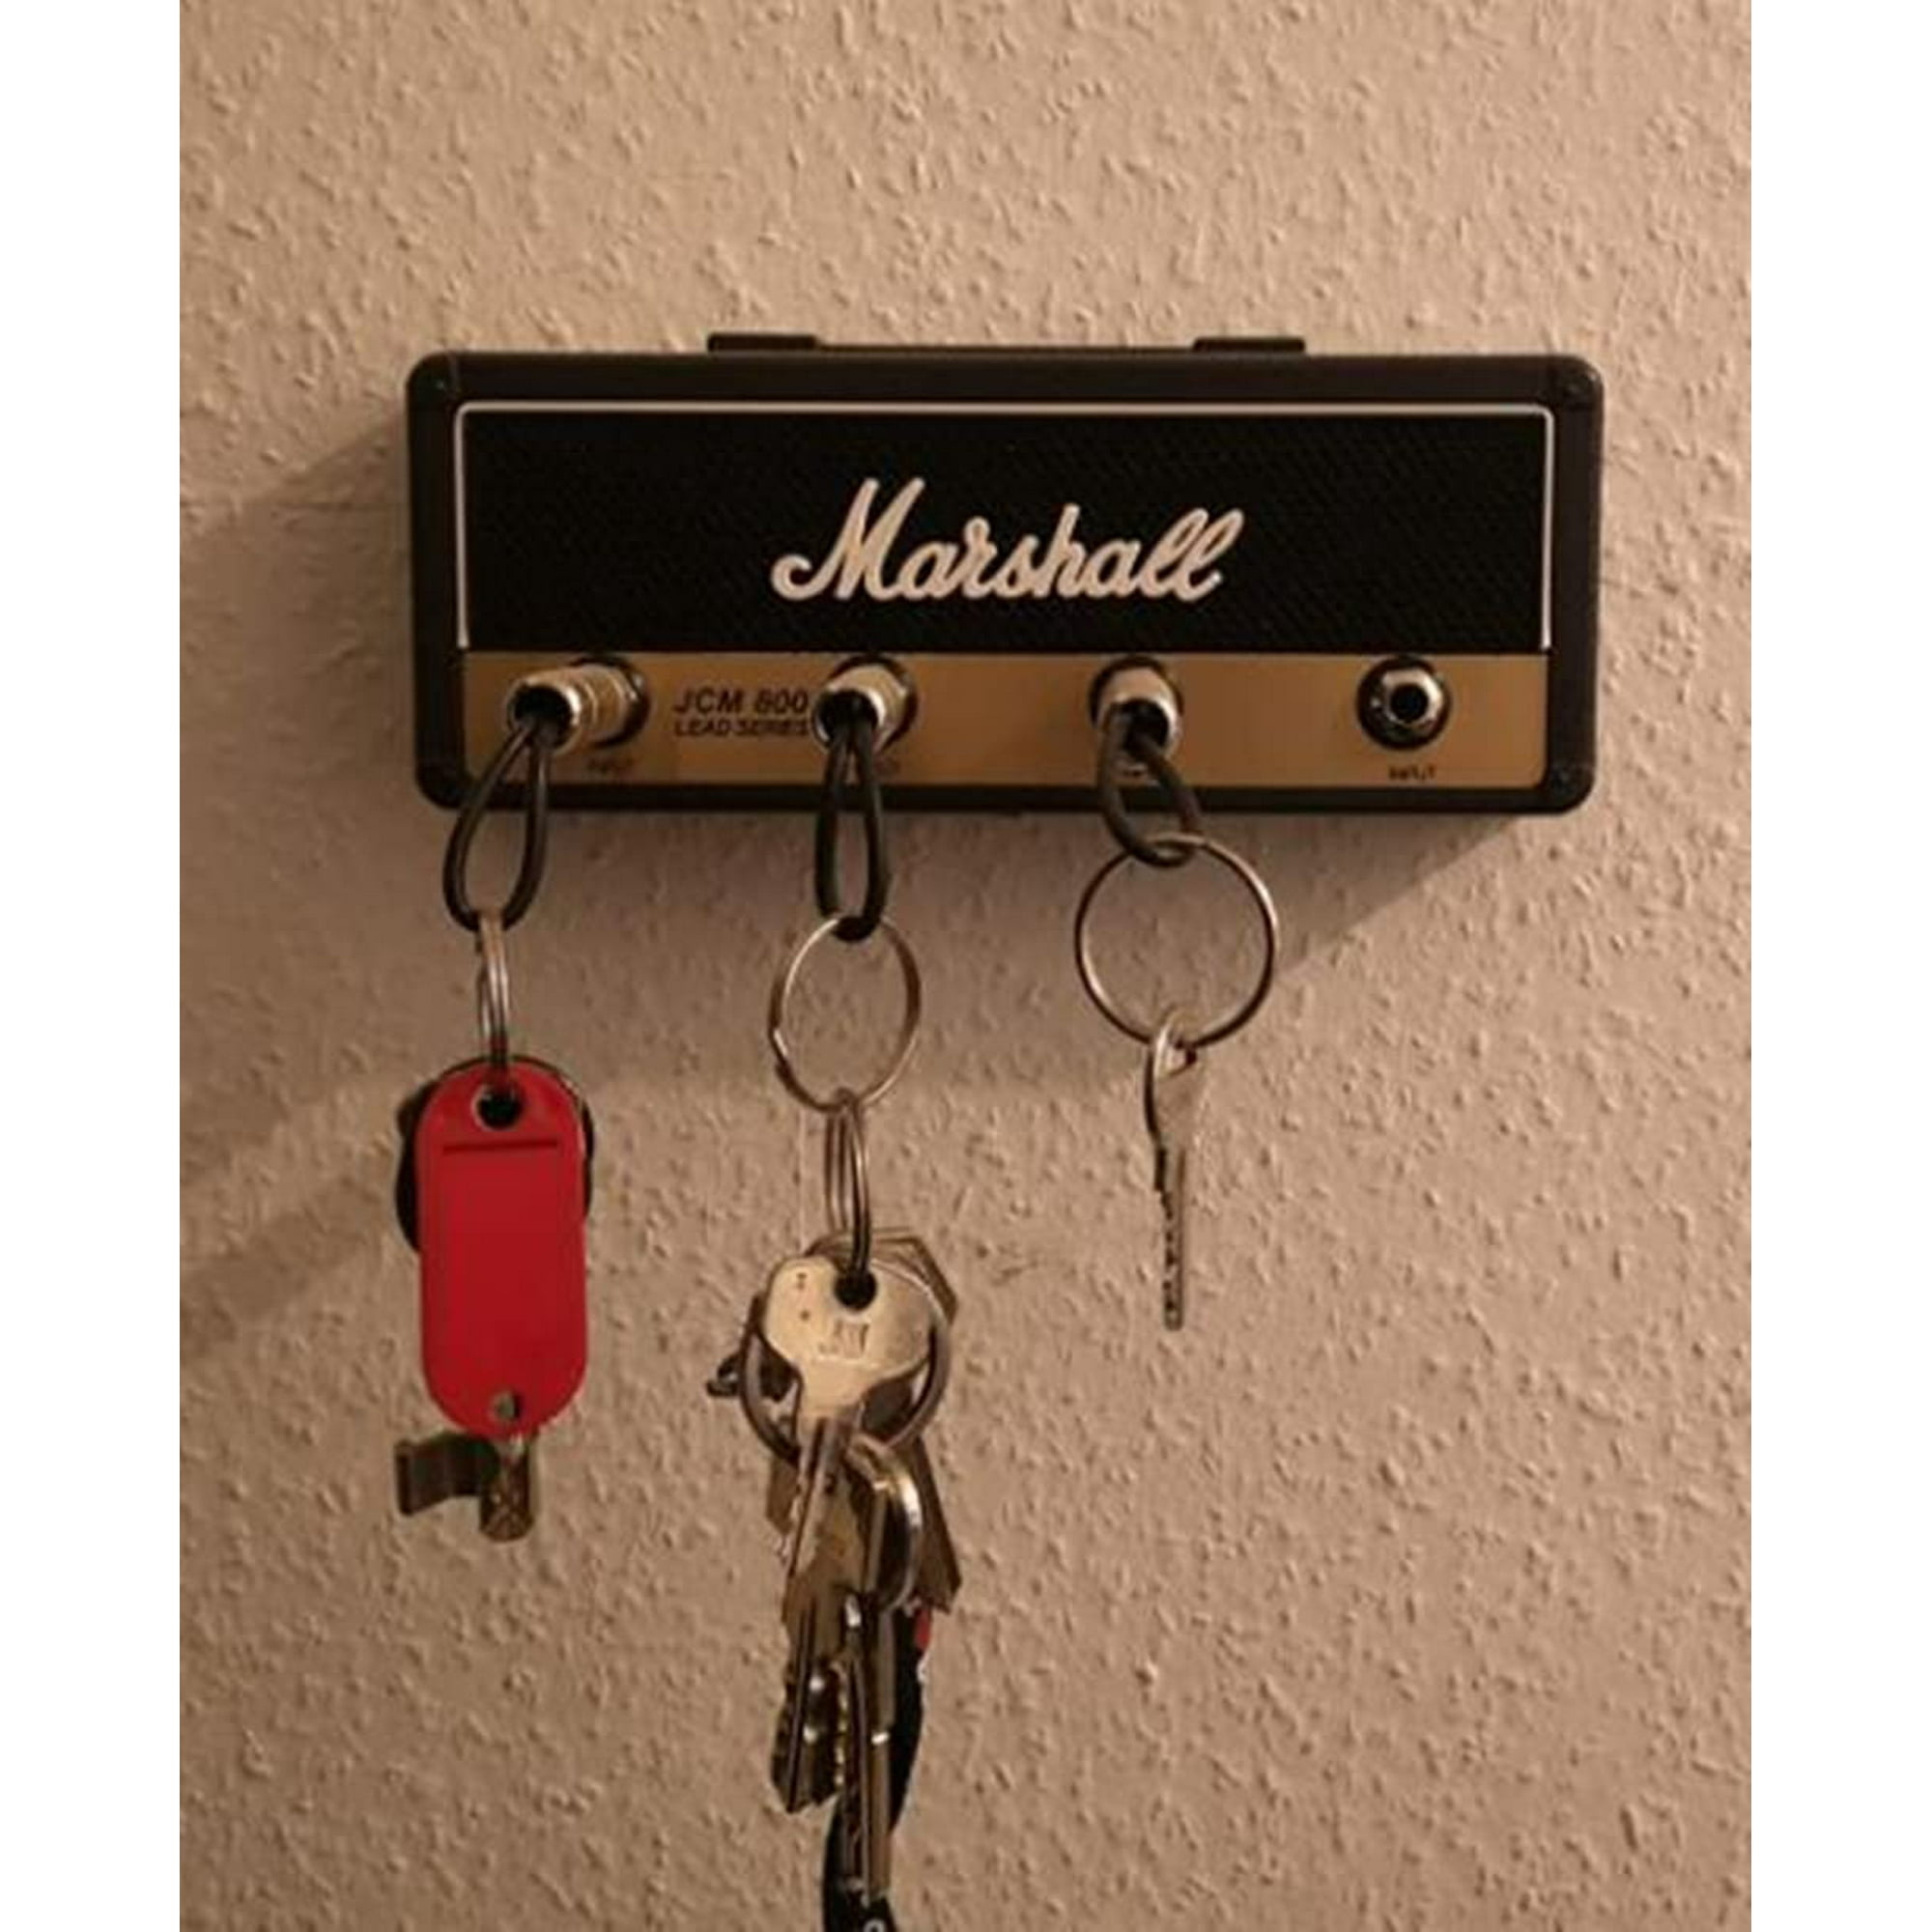 Soporte para llaves montado en la pared, caja decorativa para llaves  montada en la pared, soporte para llaves Jack Rack 2.0 JCM800 Soporte para  llaves Soporte para llaves de guitarra vintage con